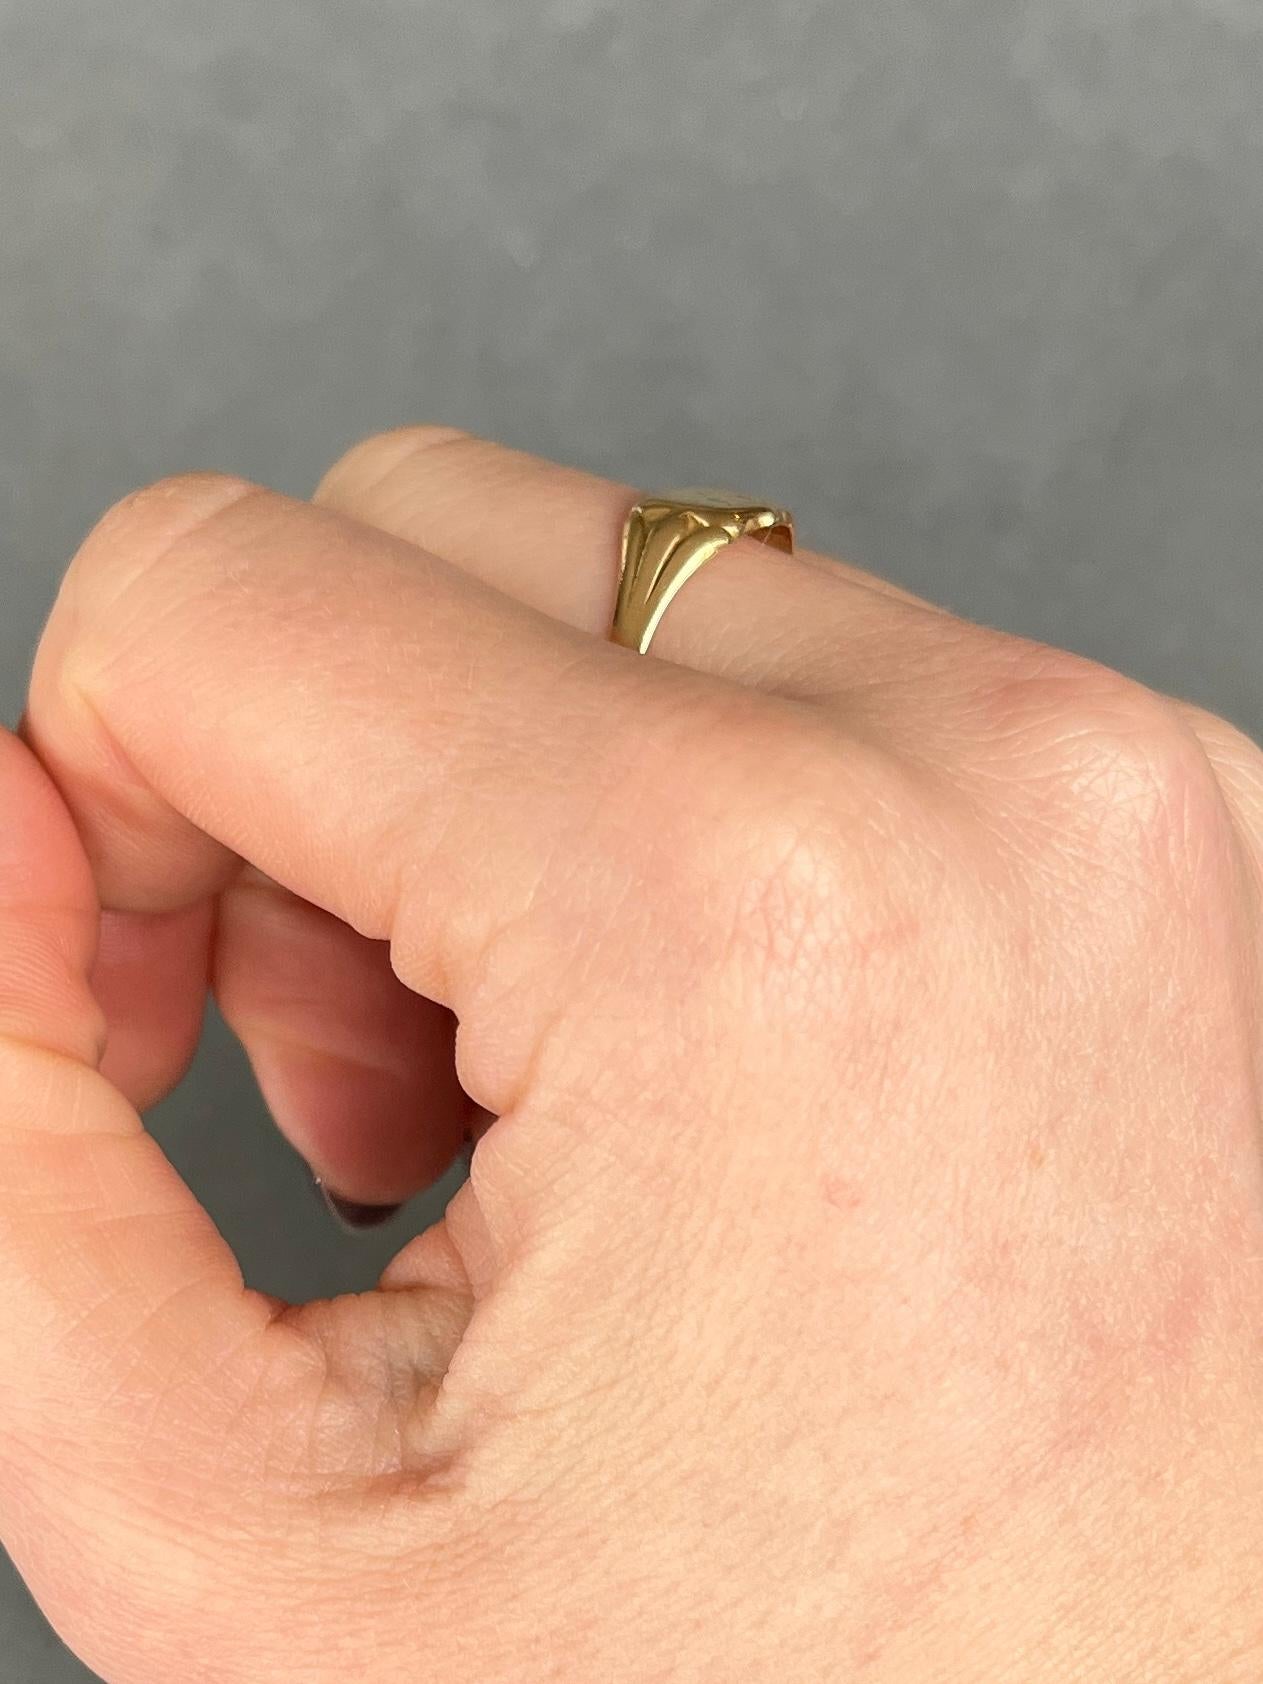 Dieser Ring ist aus glänzendem 18-karätigem Gold modelliert und hat eine schwache Gravur auf der Vorderseite. Die Buchstaben sind nicht zu erkennen und sind sehr subtil. Vollständig gestempelt Chester 1906.

RIng Größe: N 1/2 oder 7
Breiteste